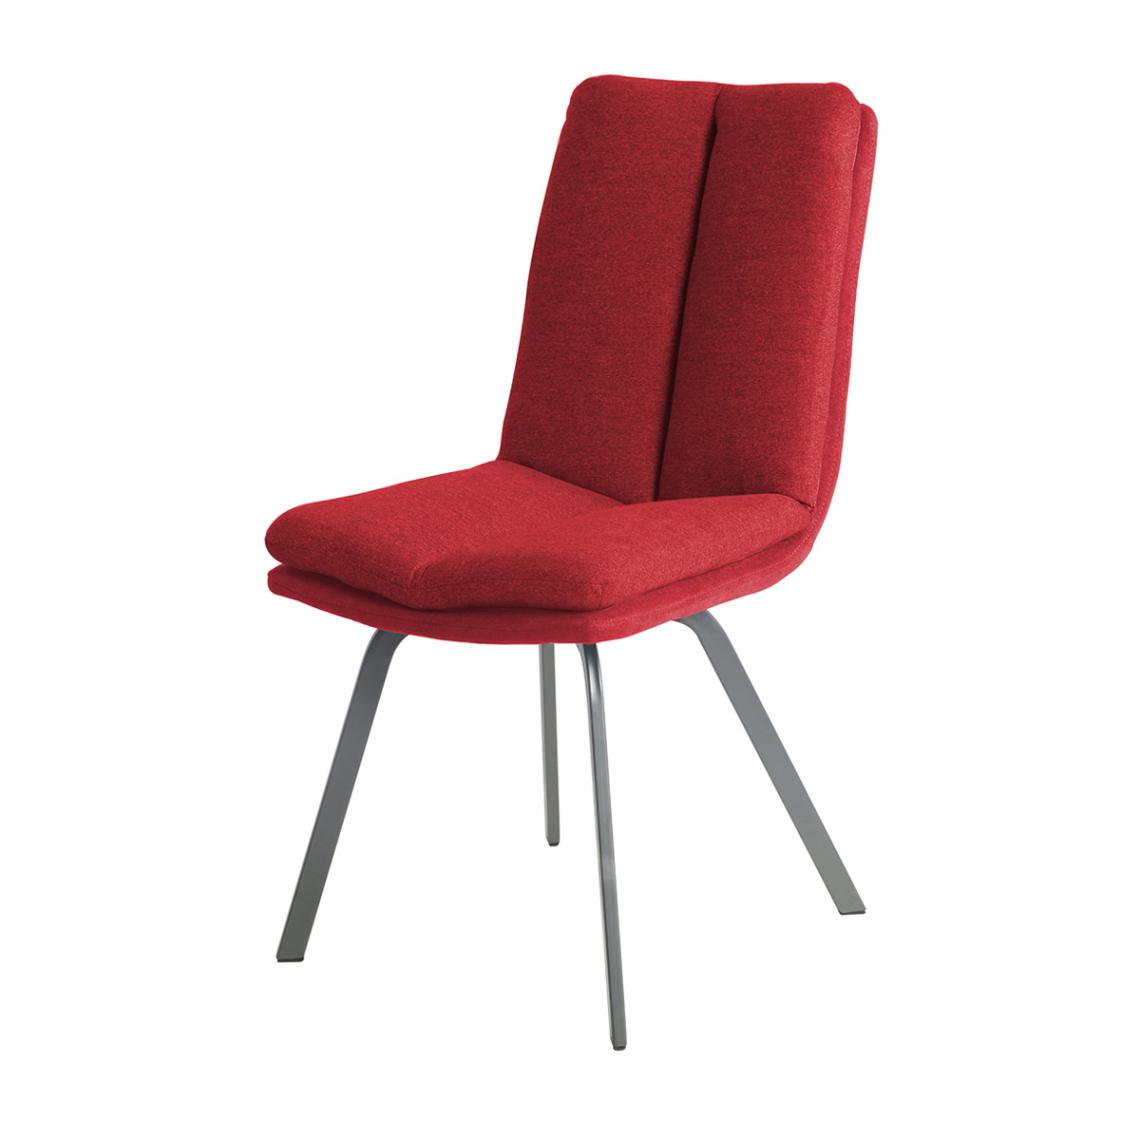 Pegane - Lot de 2 chaises coloris rouge en métal / tissu - Longueur 47 x Profondeur 65 x hauteur 86 x hauteur Assise 48 cm - Chaises